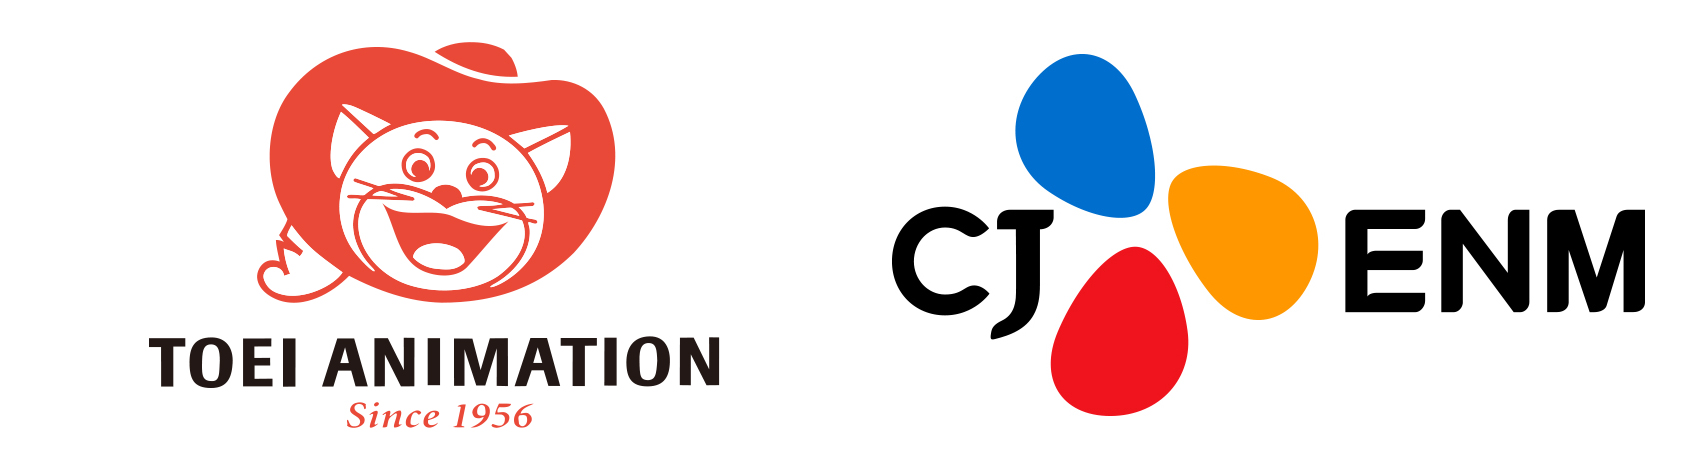 東映アニメーション株式会社、韓国CJ ENMとグローバルコンテンツ創出のための戦略的業務提携協定を締結